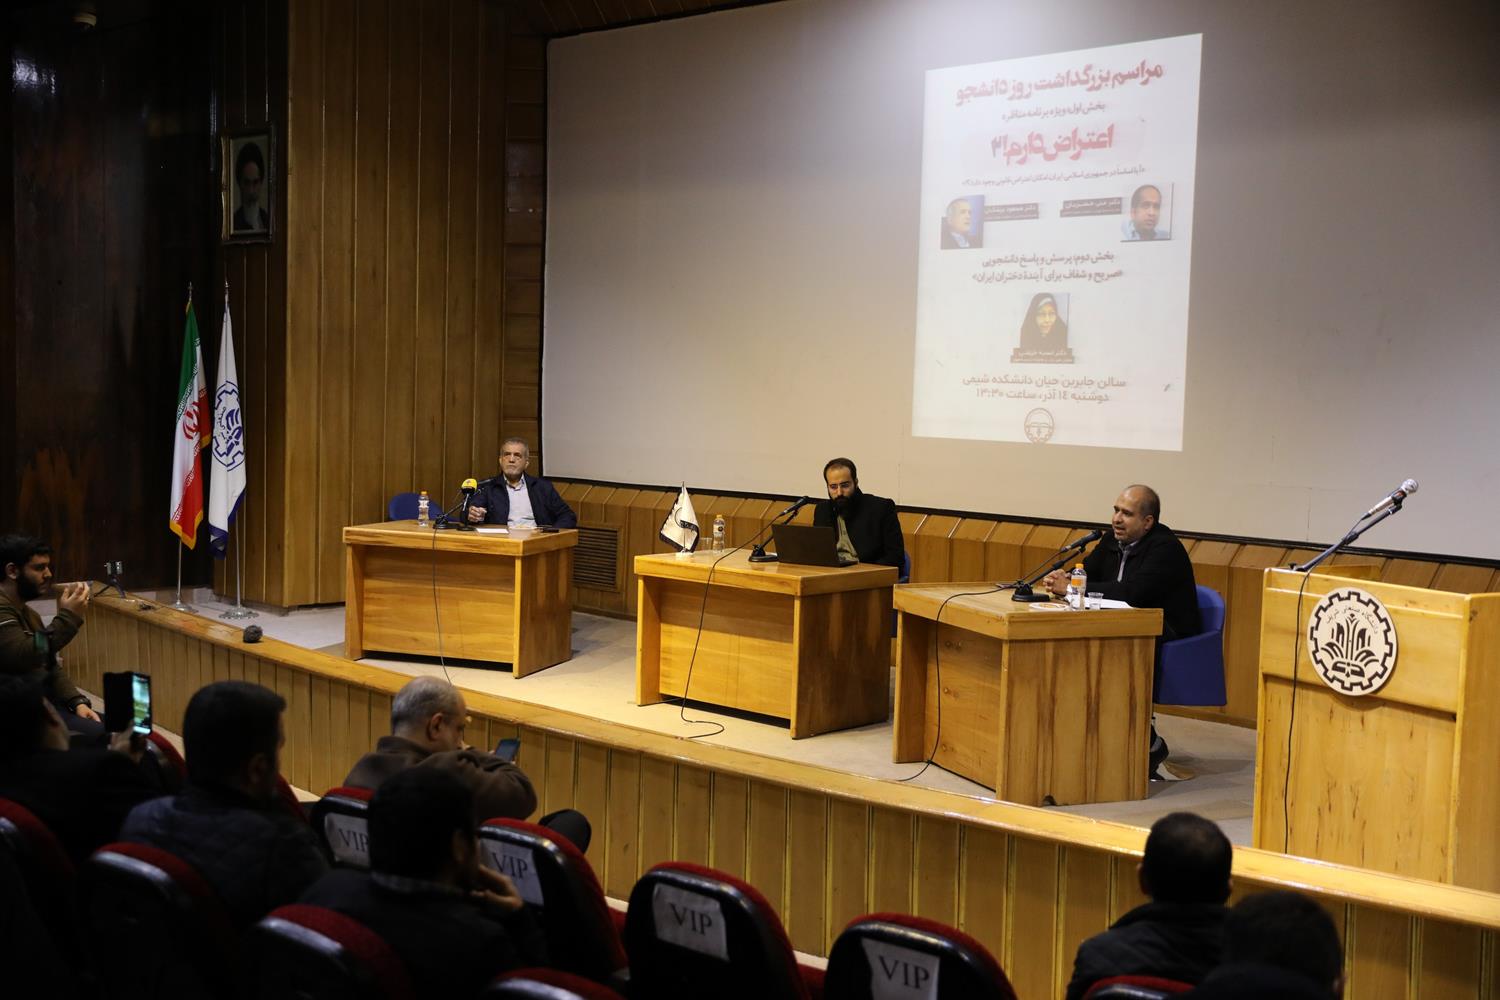 گزارش تصویری مناظره علی خضریان با دکتر پزشکیان در دانشگاه صنعتی شریف